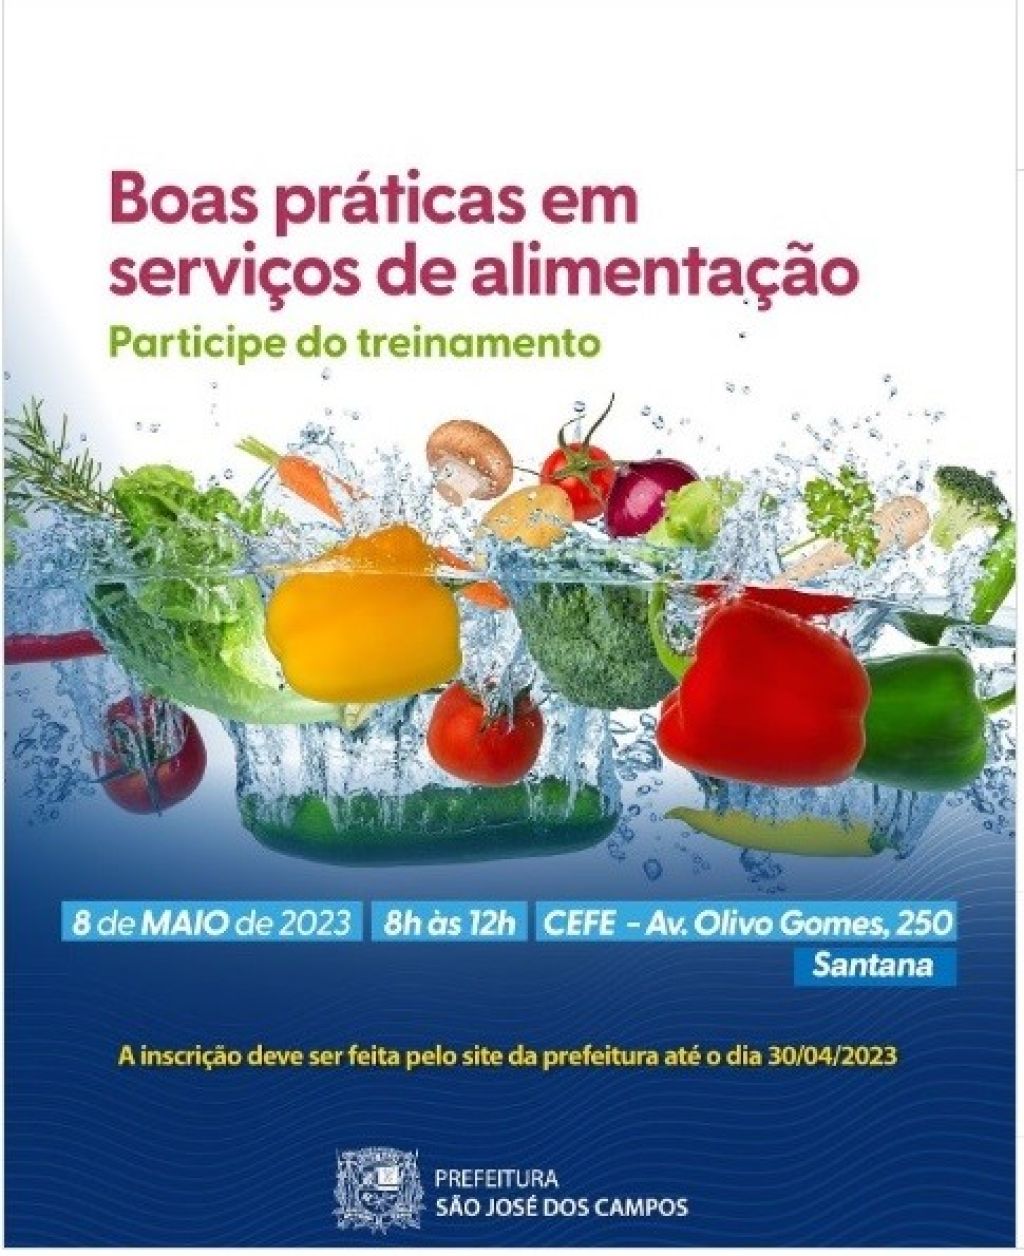 SINHORES promove curso gratuito em parceria com a Vigilância Sanitária de São José dos Campos